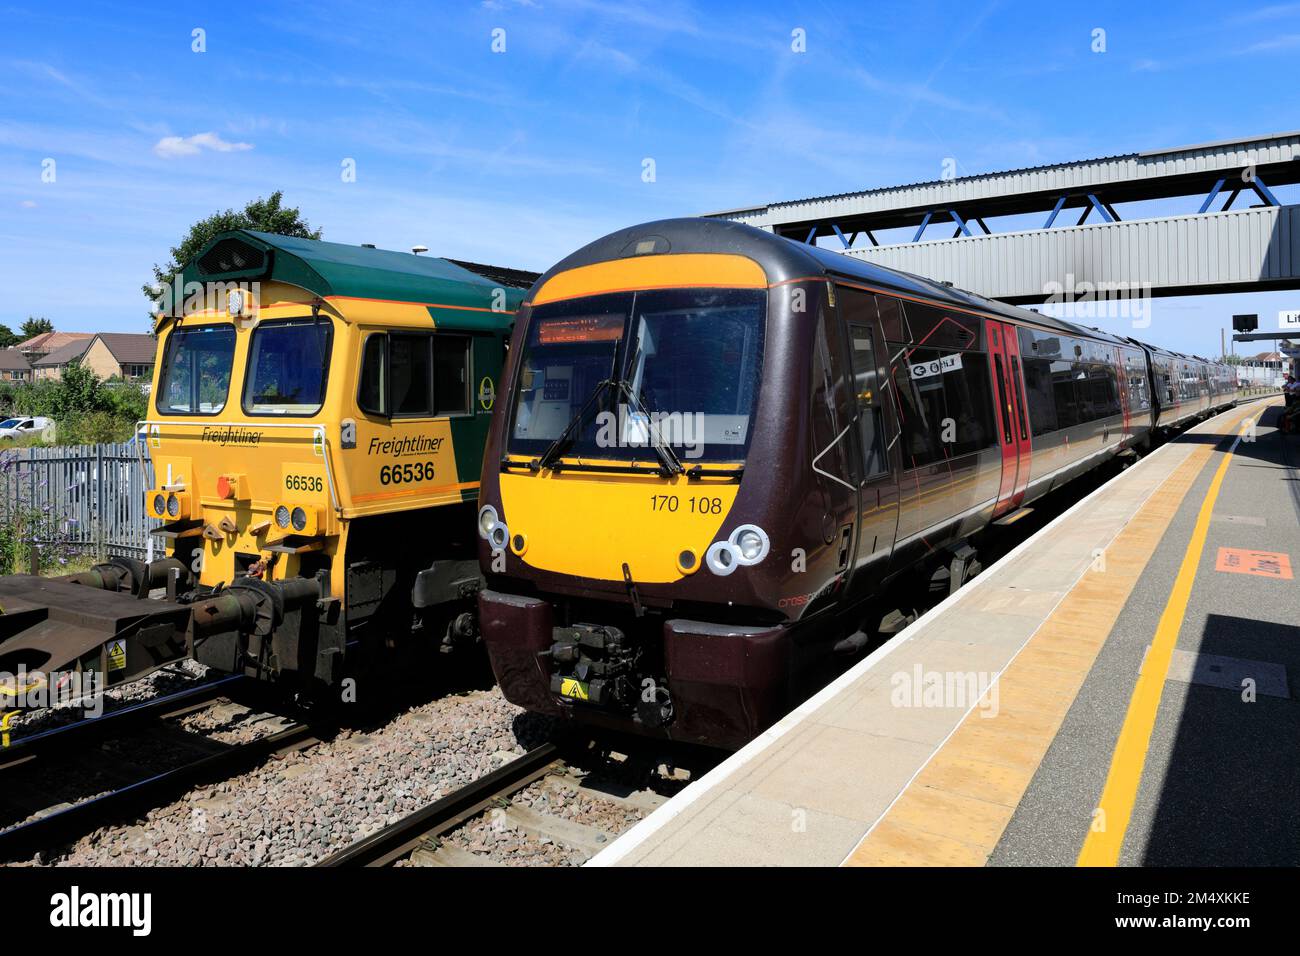 C2C 170108 à la gare de Peterborough, East Coast main Line Railway; Cambridgeshire, Angleterre, Royaume-Uni Banque D'Images